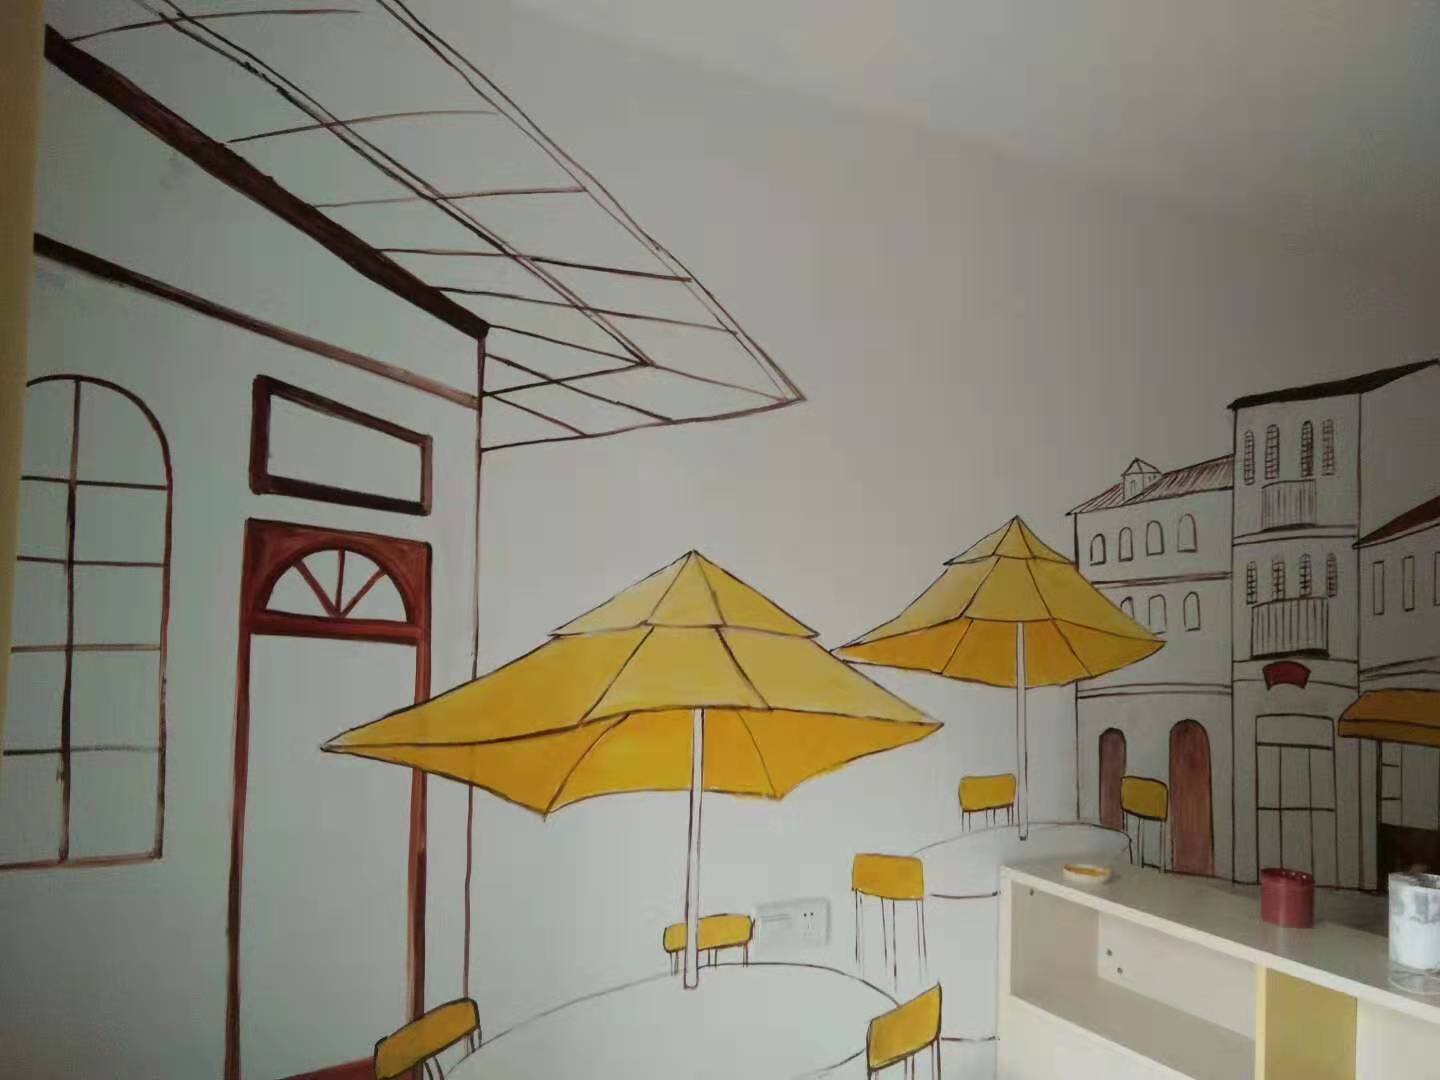 纯手绘简约风格南京餐馆墙绘图y墙面彩绘设计感十足